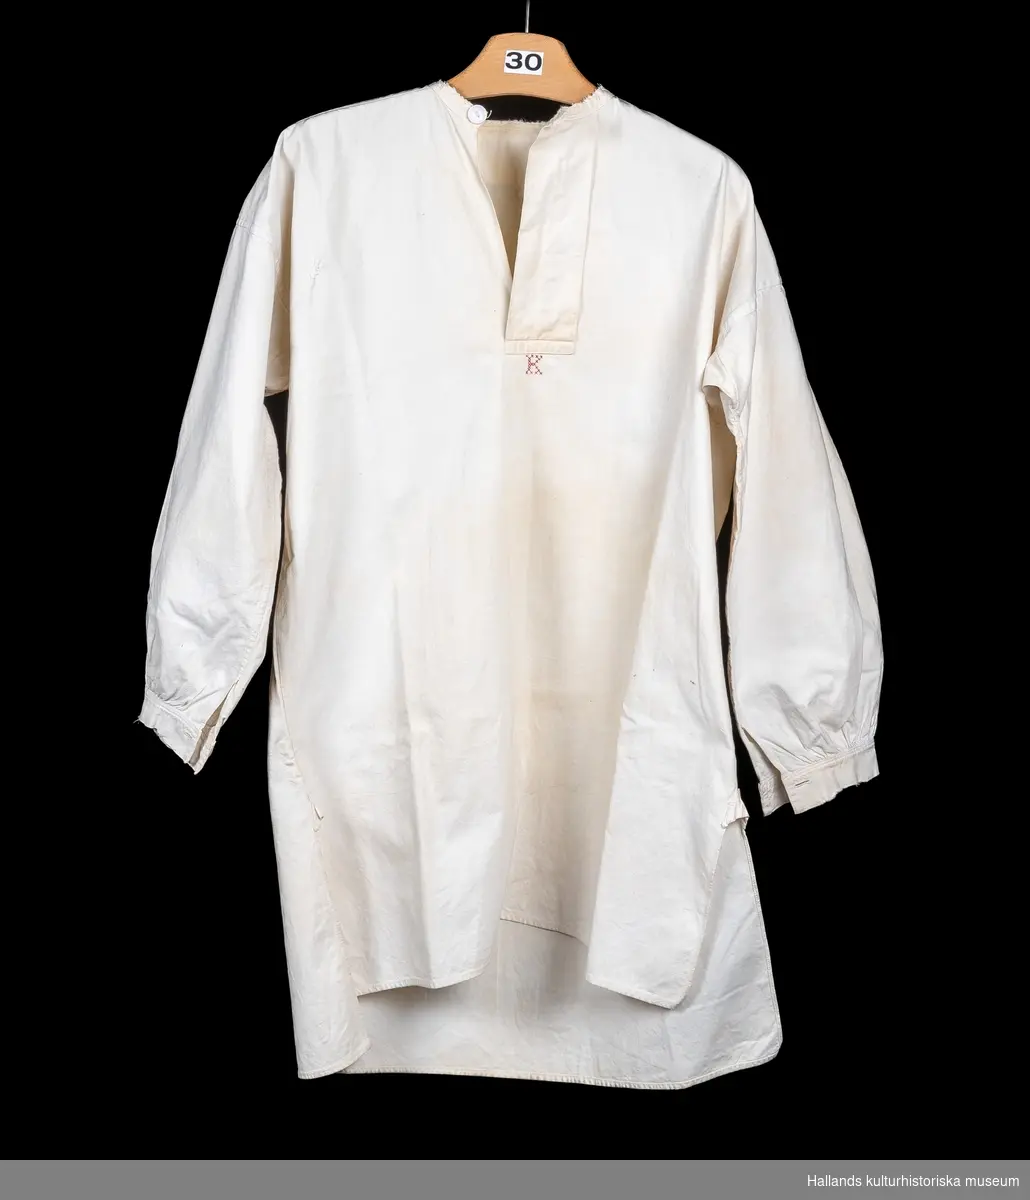 Skjorta, så kallad slåtterskjorta, använd vid slåtter. Av vit bomull. Bakstycket går något längre ner än framstycket. Långärmad med knapp vid manschetten. Sprund med knapp vid halsen. Rund hals. Märkt: "K", med korsstygn. En lagning. Lite sliten i kanterna.